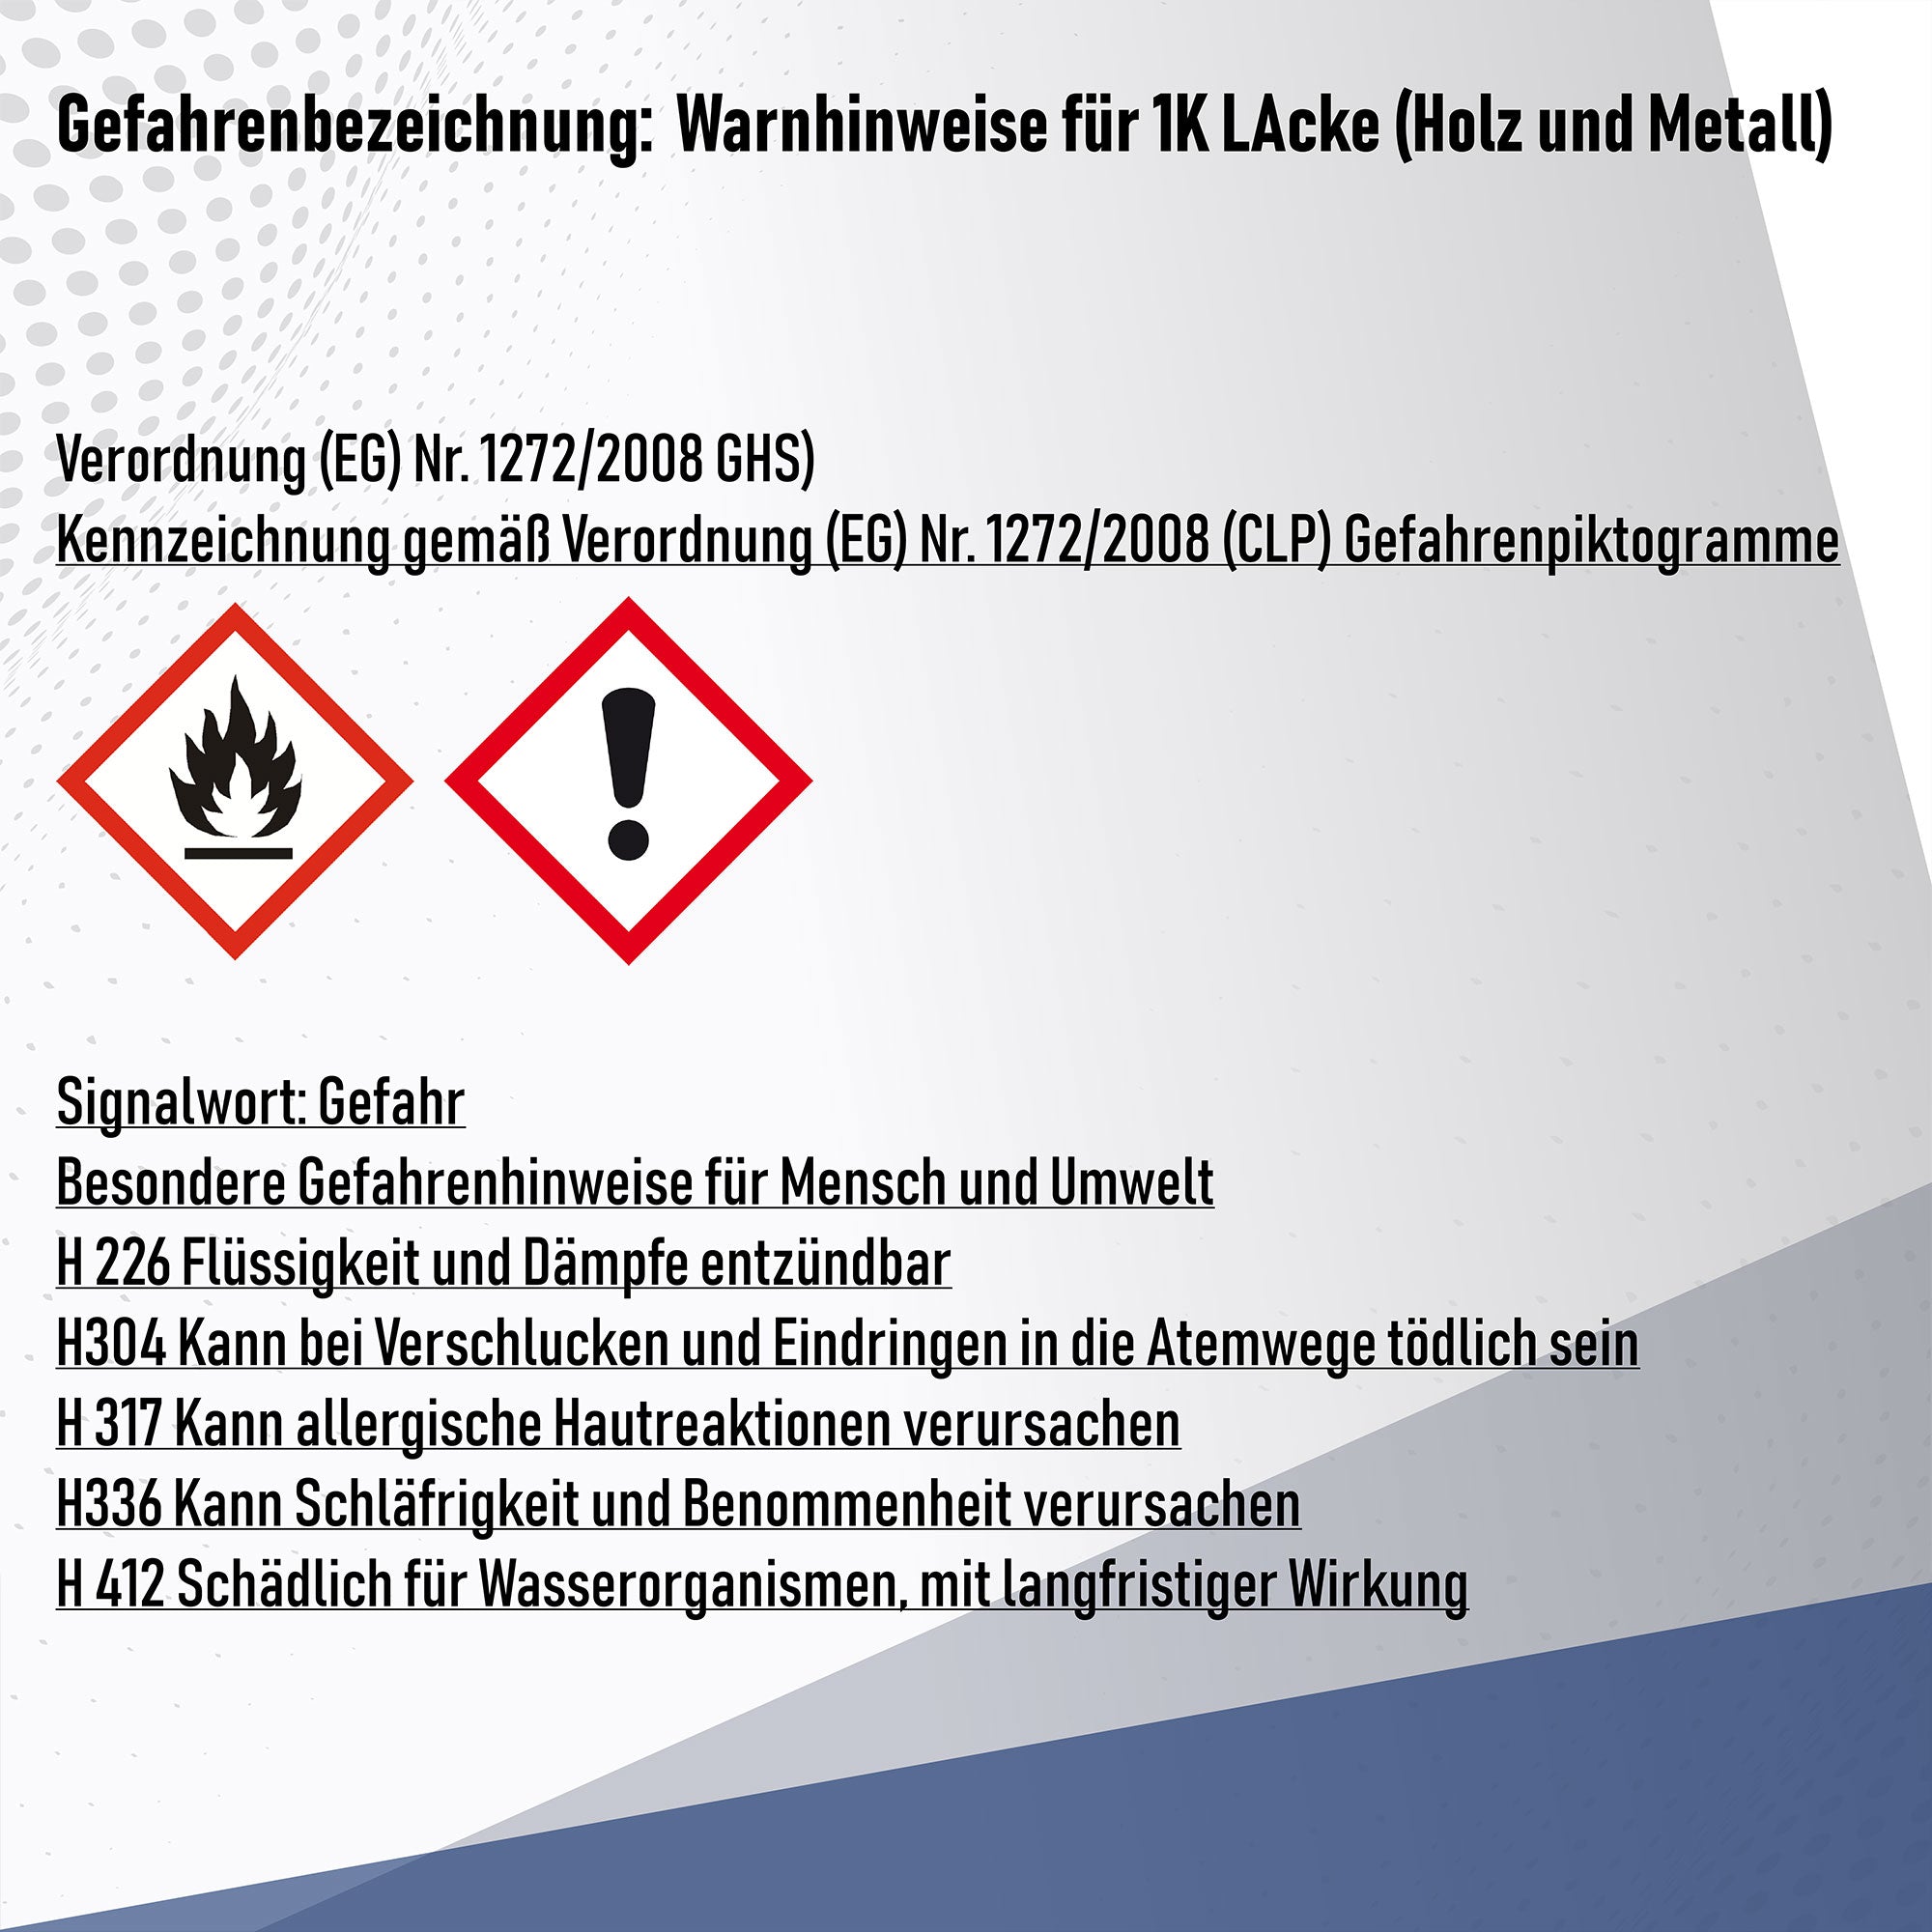 Hamburger Lack-Profi Buntlack in Gelborange RAL 2000 mit Lackierset (X300) & Verdünnung (1 L) - 30% Sparangebot